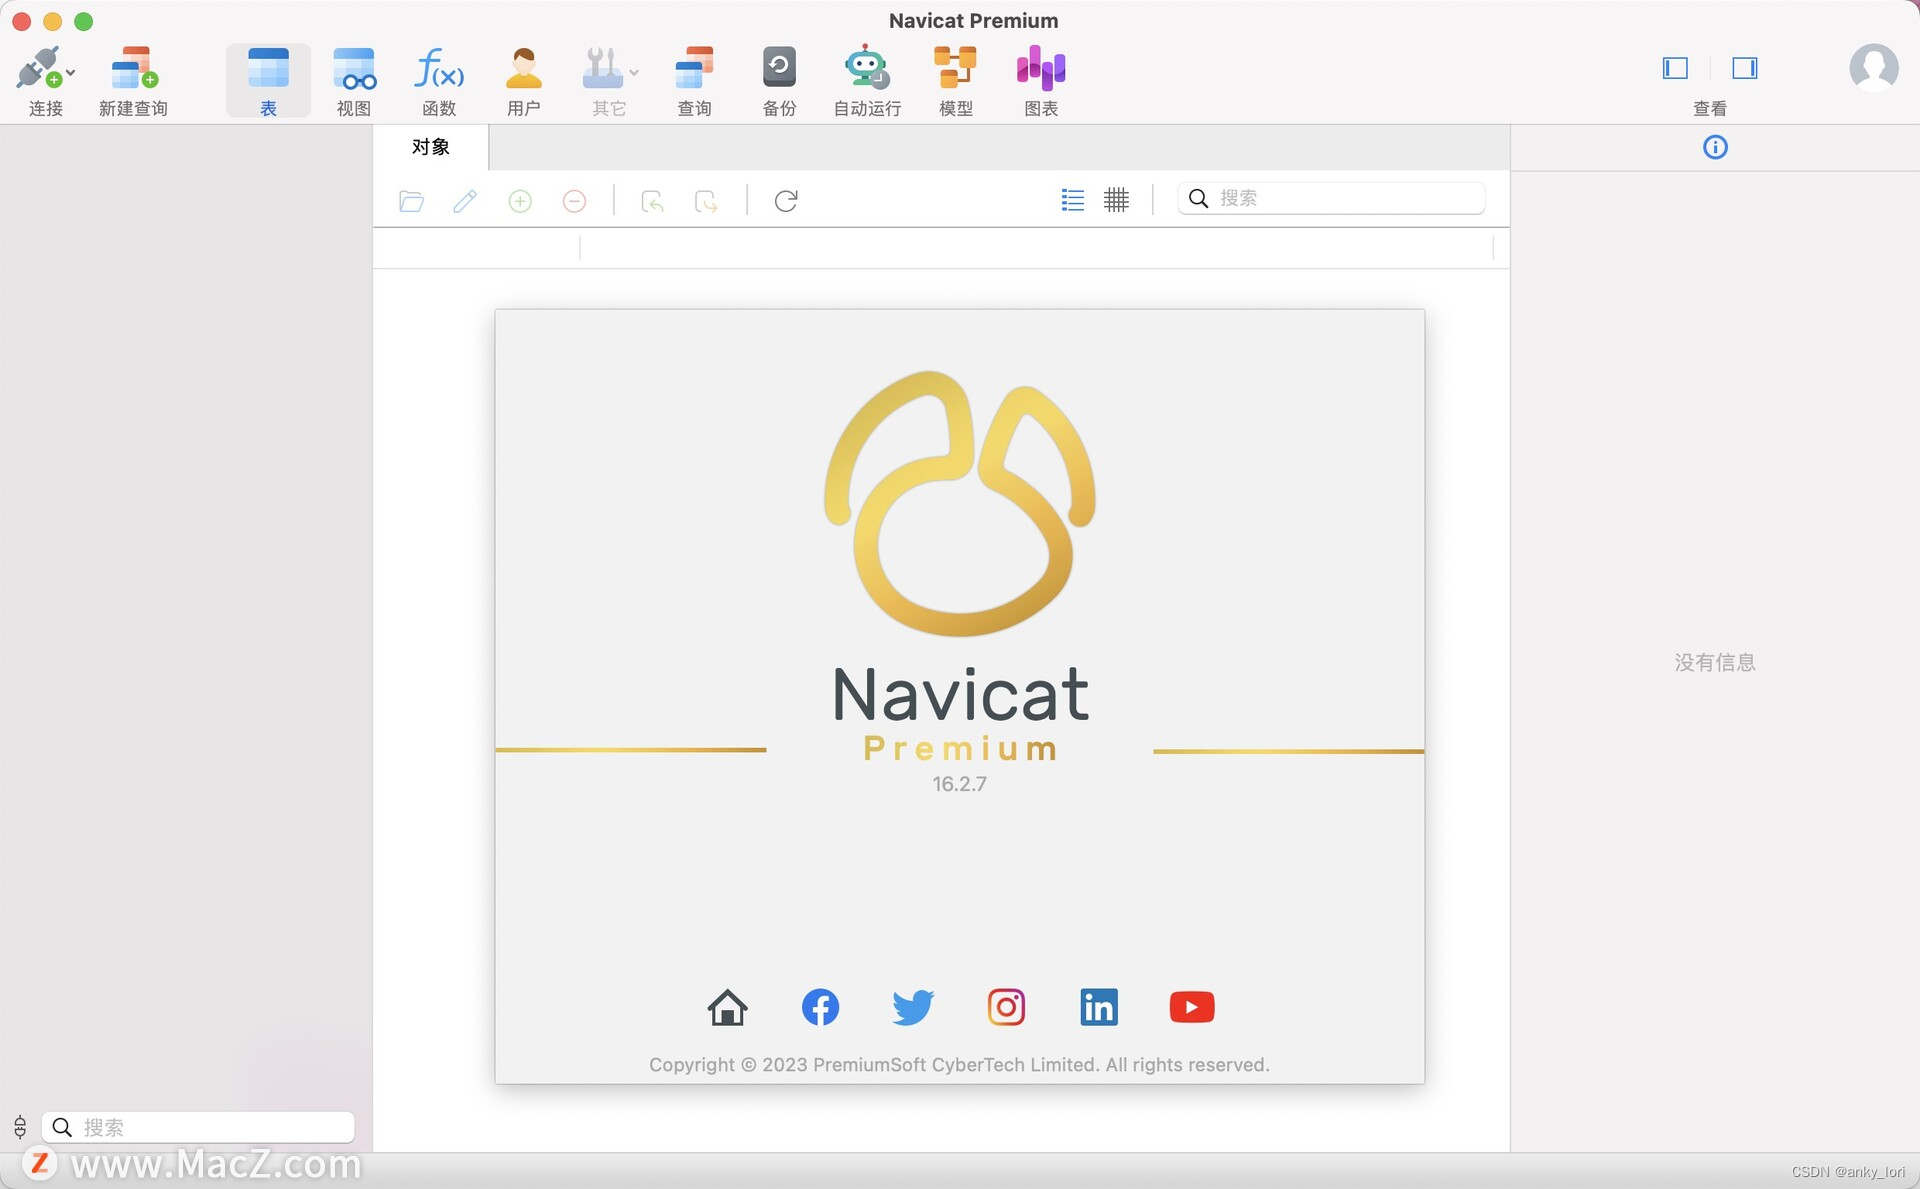 Navicat Premium 16.2.7 for Mac